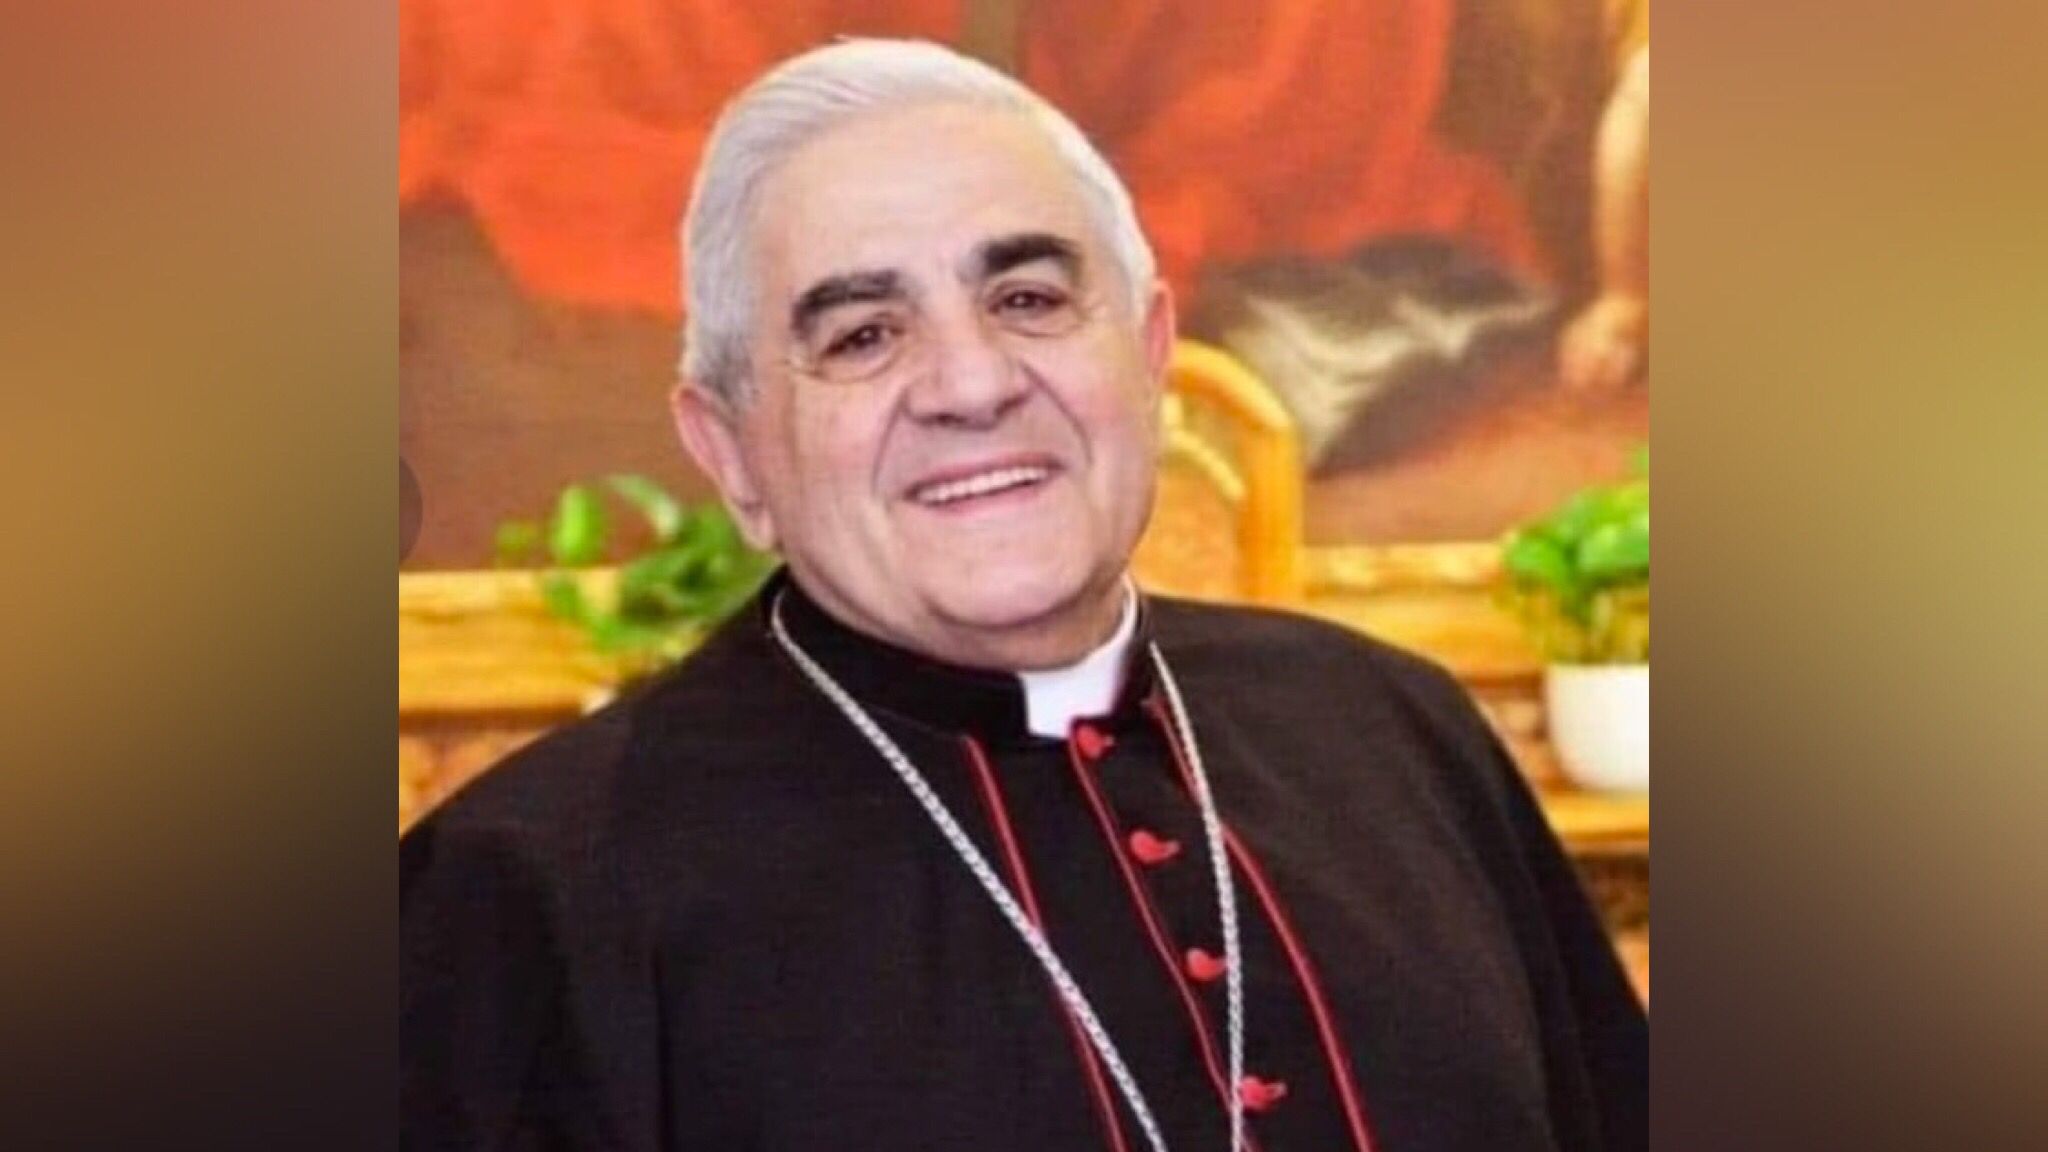 Malore per l'ex arcivescovo di Sassari Atzei: è grave